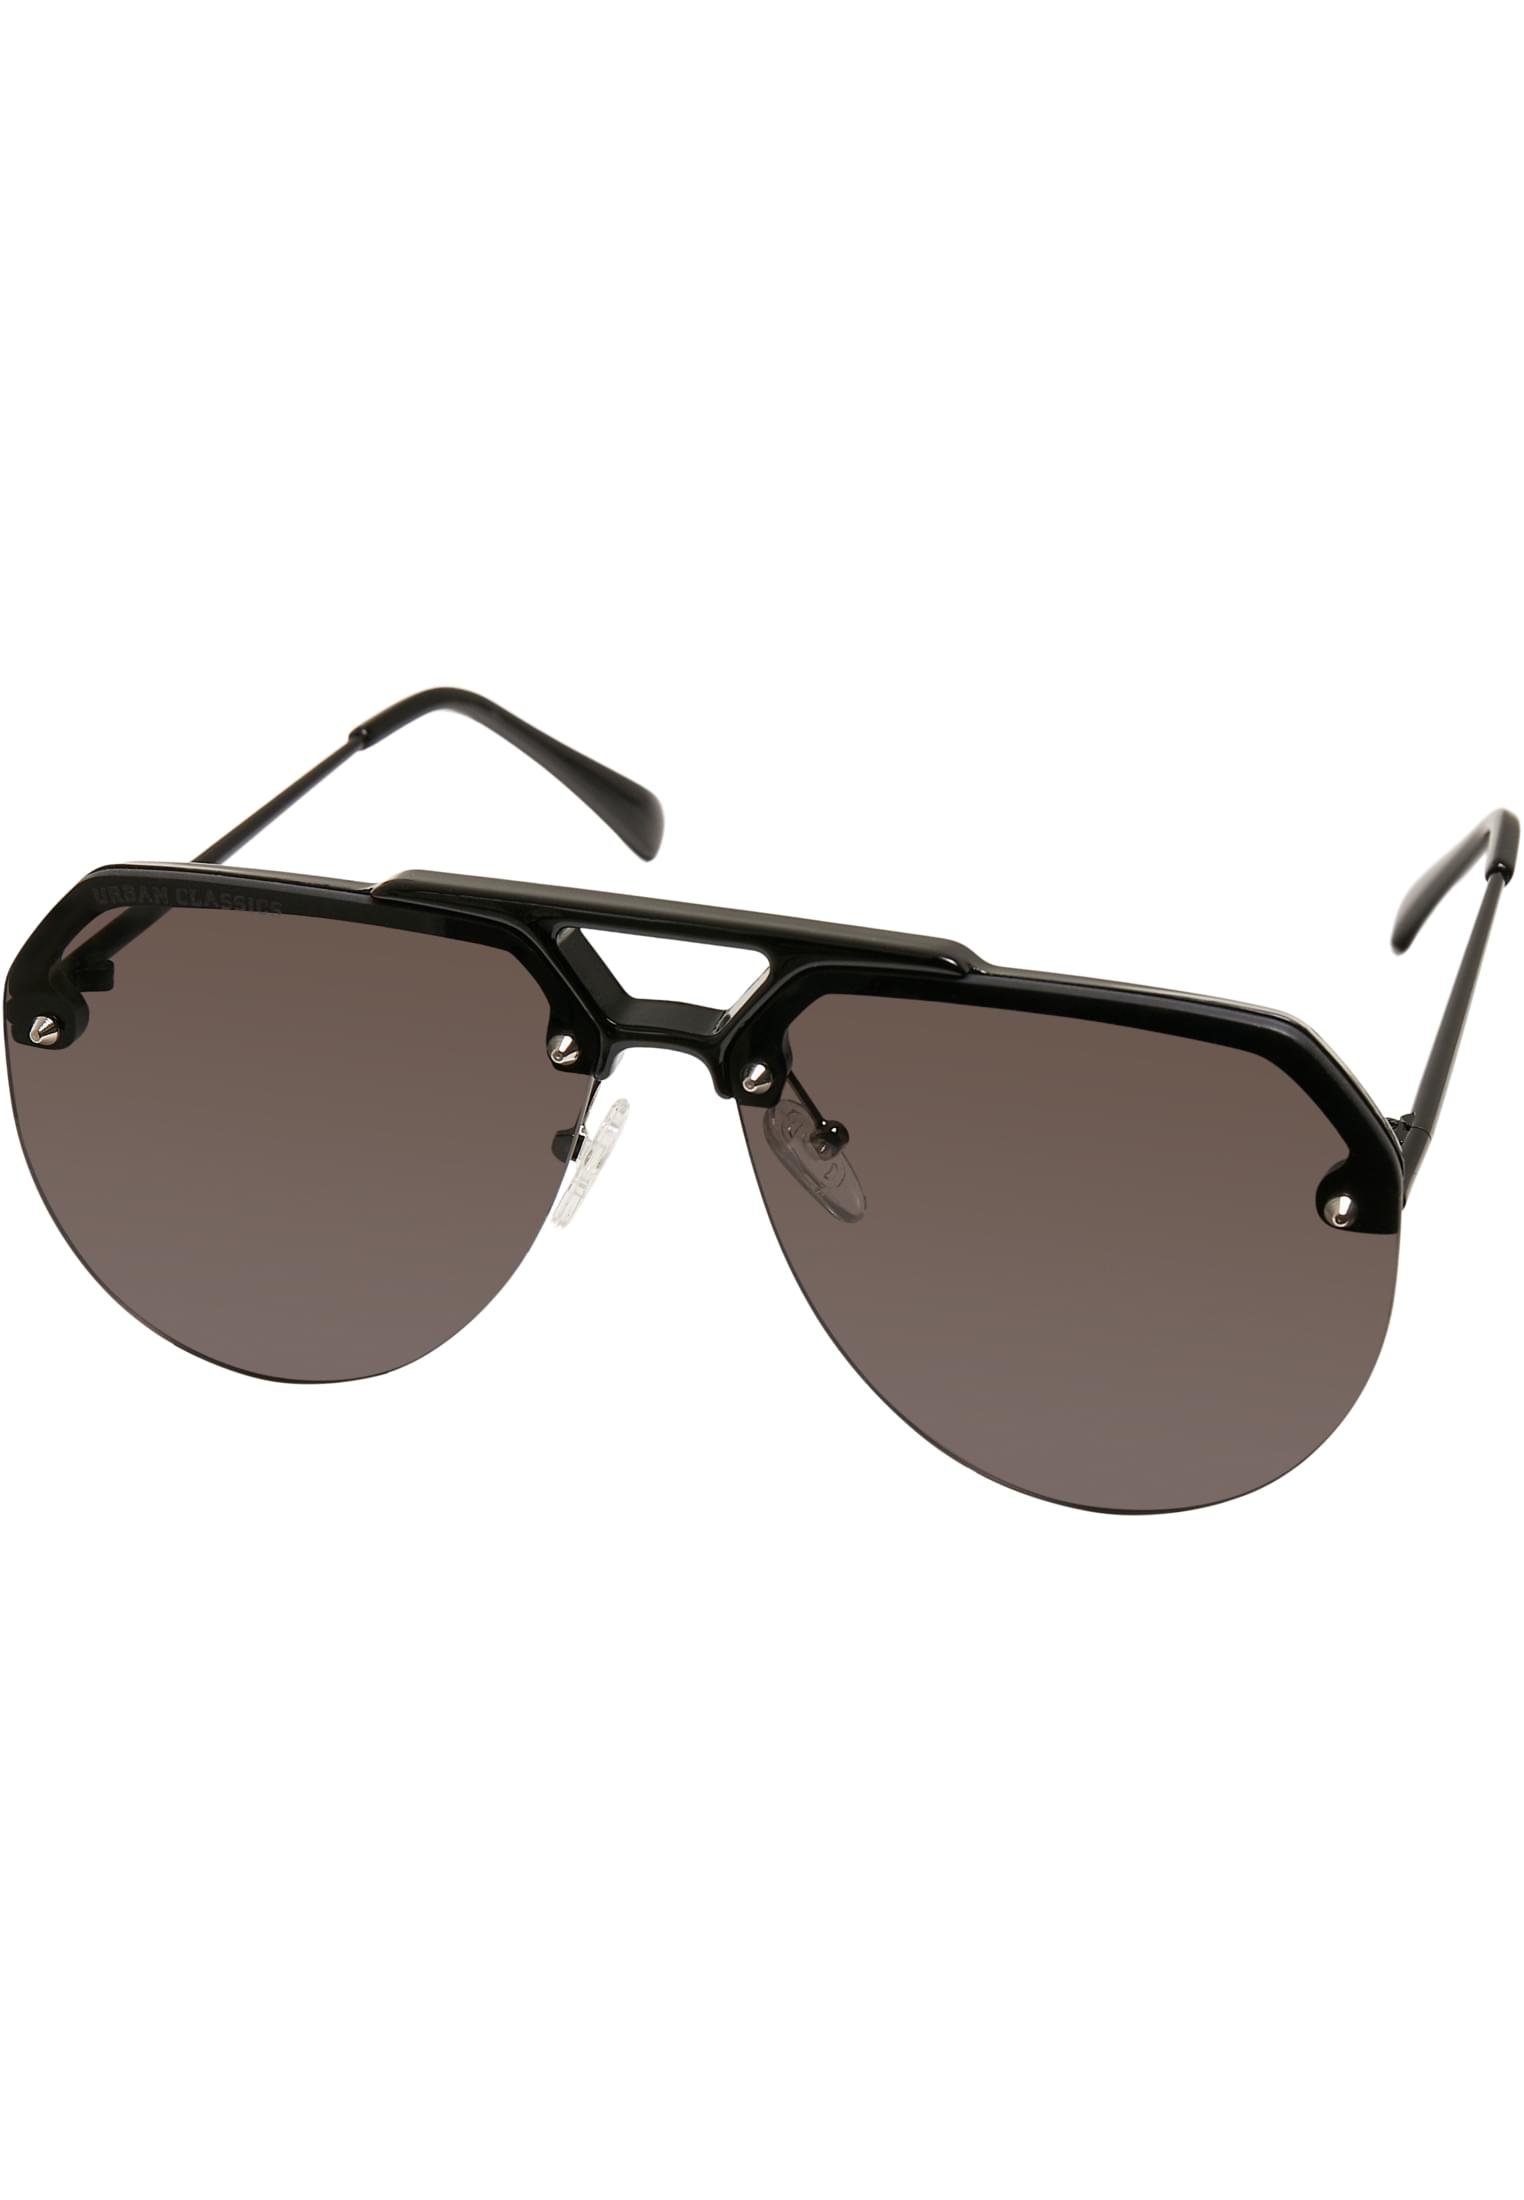 black Sonnenbrille Sunglasses URBAN Toronto CLASSICS Unisex